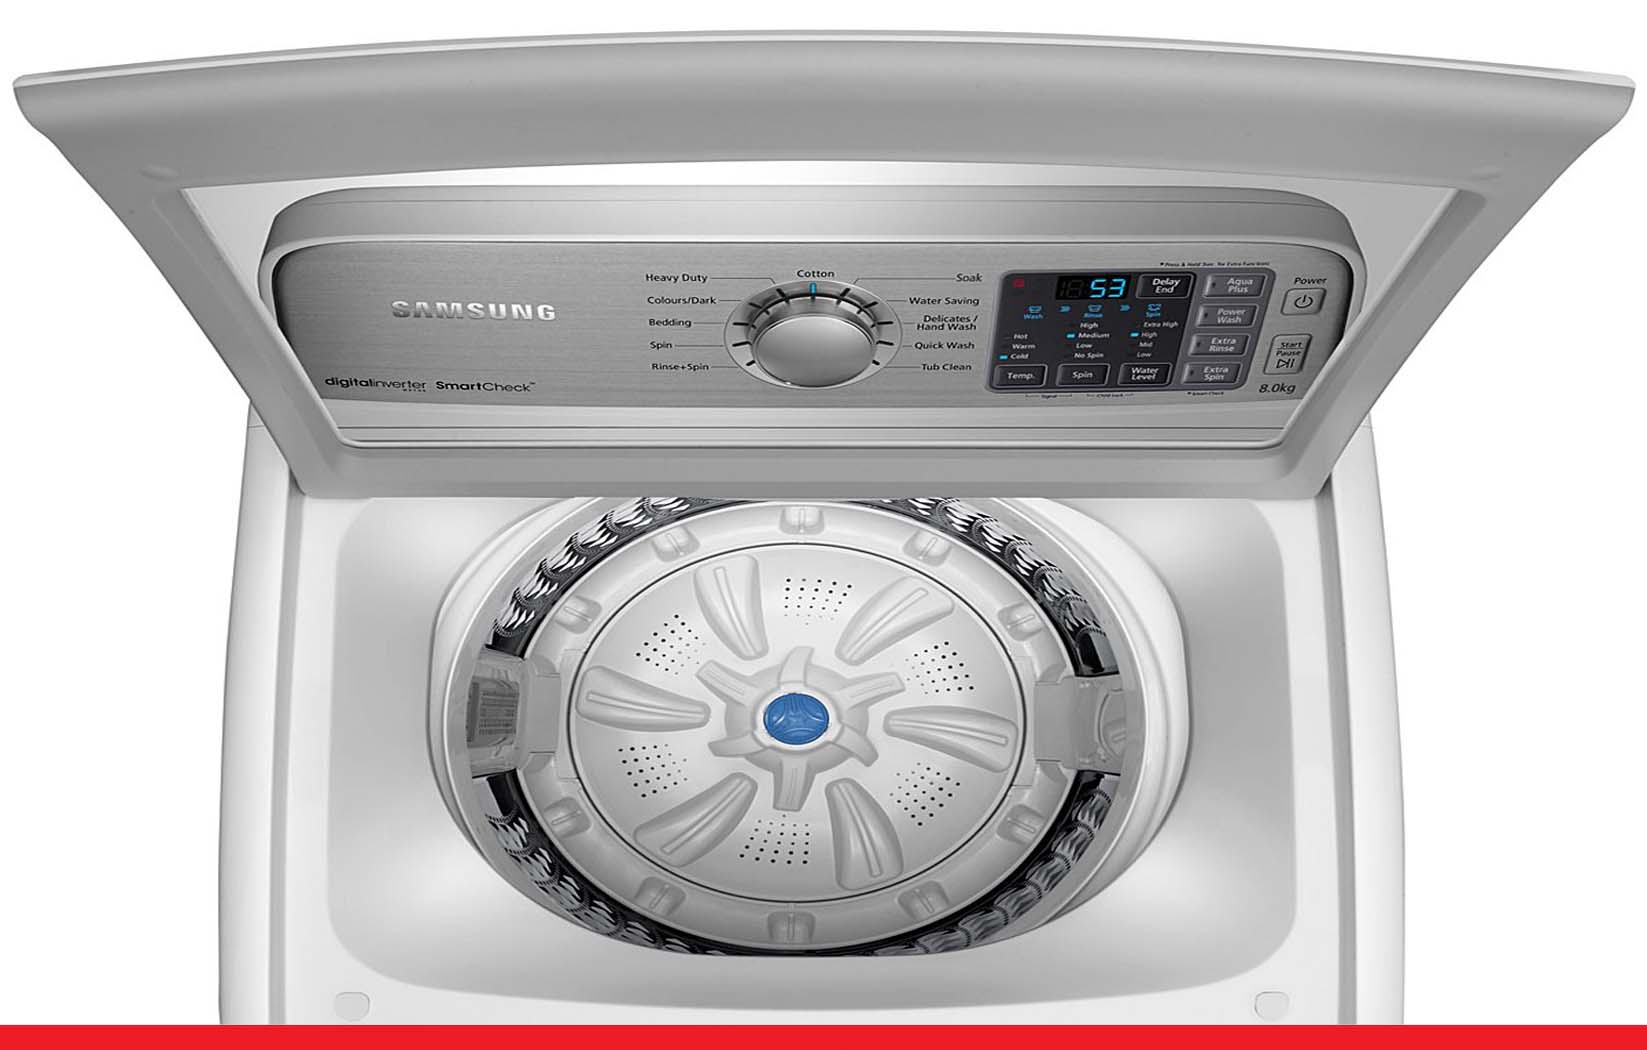 20,000 रुपये से भी कम कीमत पर मिल रही हैं ये Top Loading वॉशिंग मशीन
